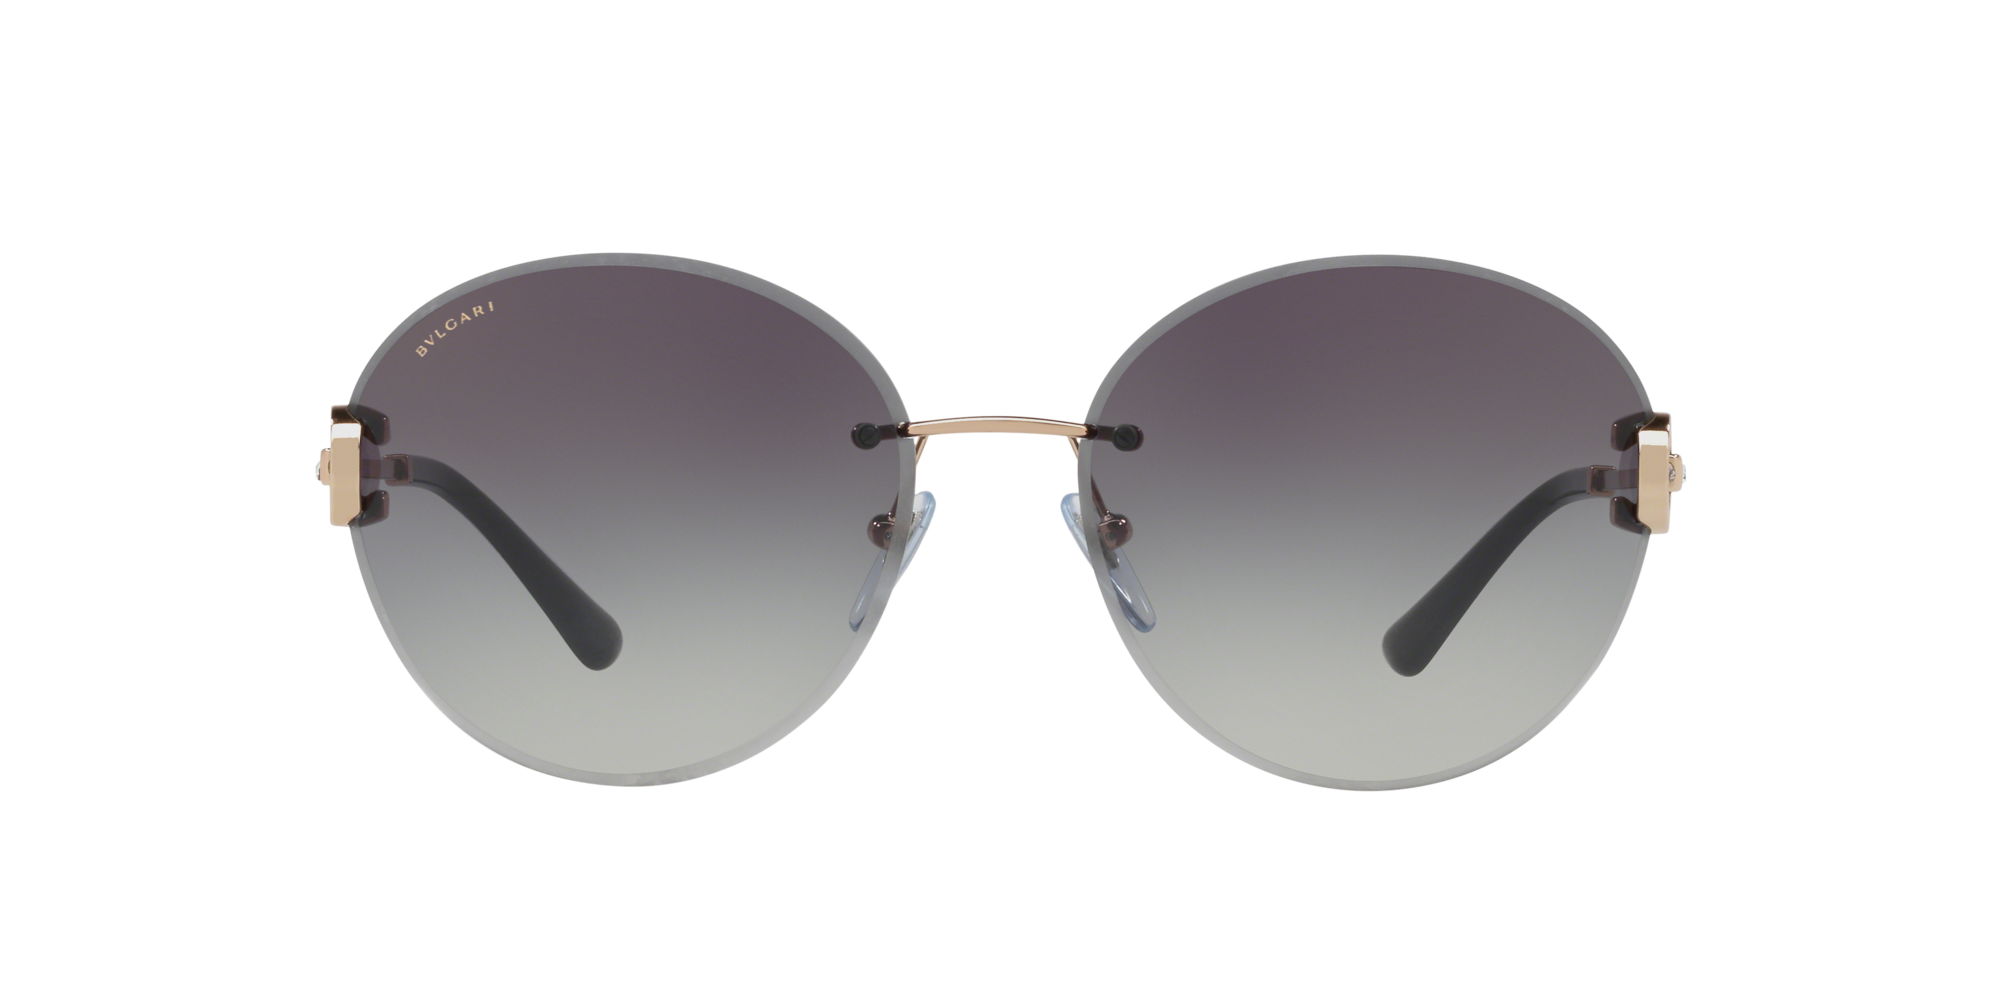 bvlgari sunglasses uk 2017